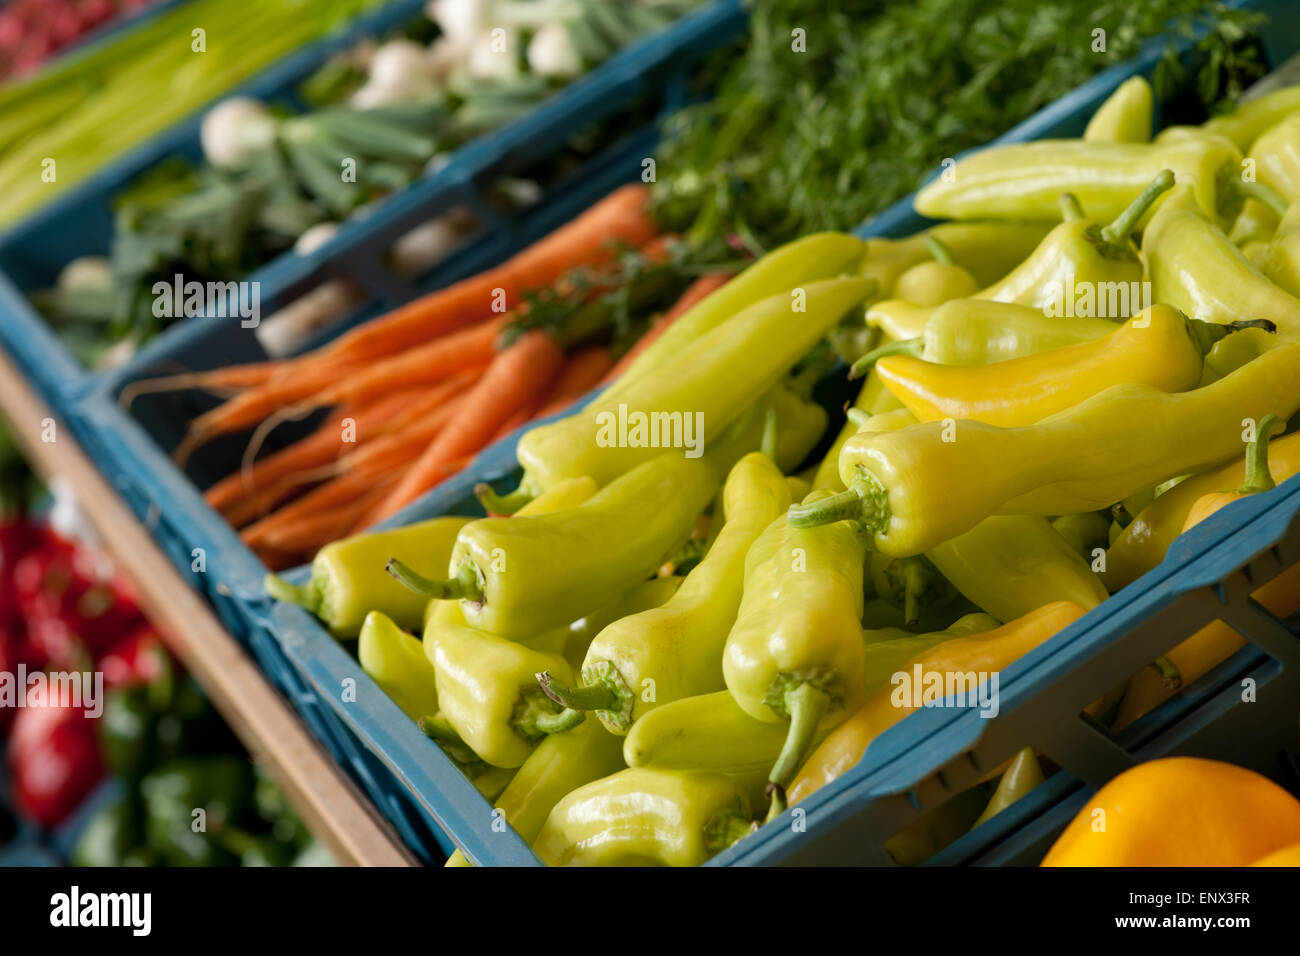 Supermarkt einkaufen - Nahaufnahme von Gemüse Stockfoto